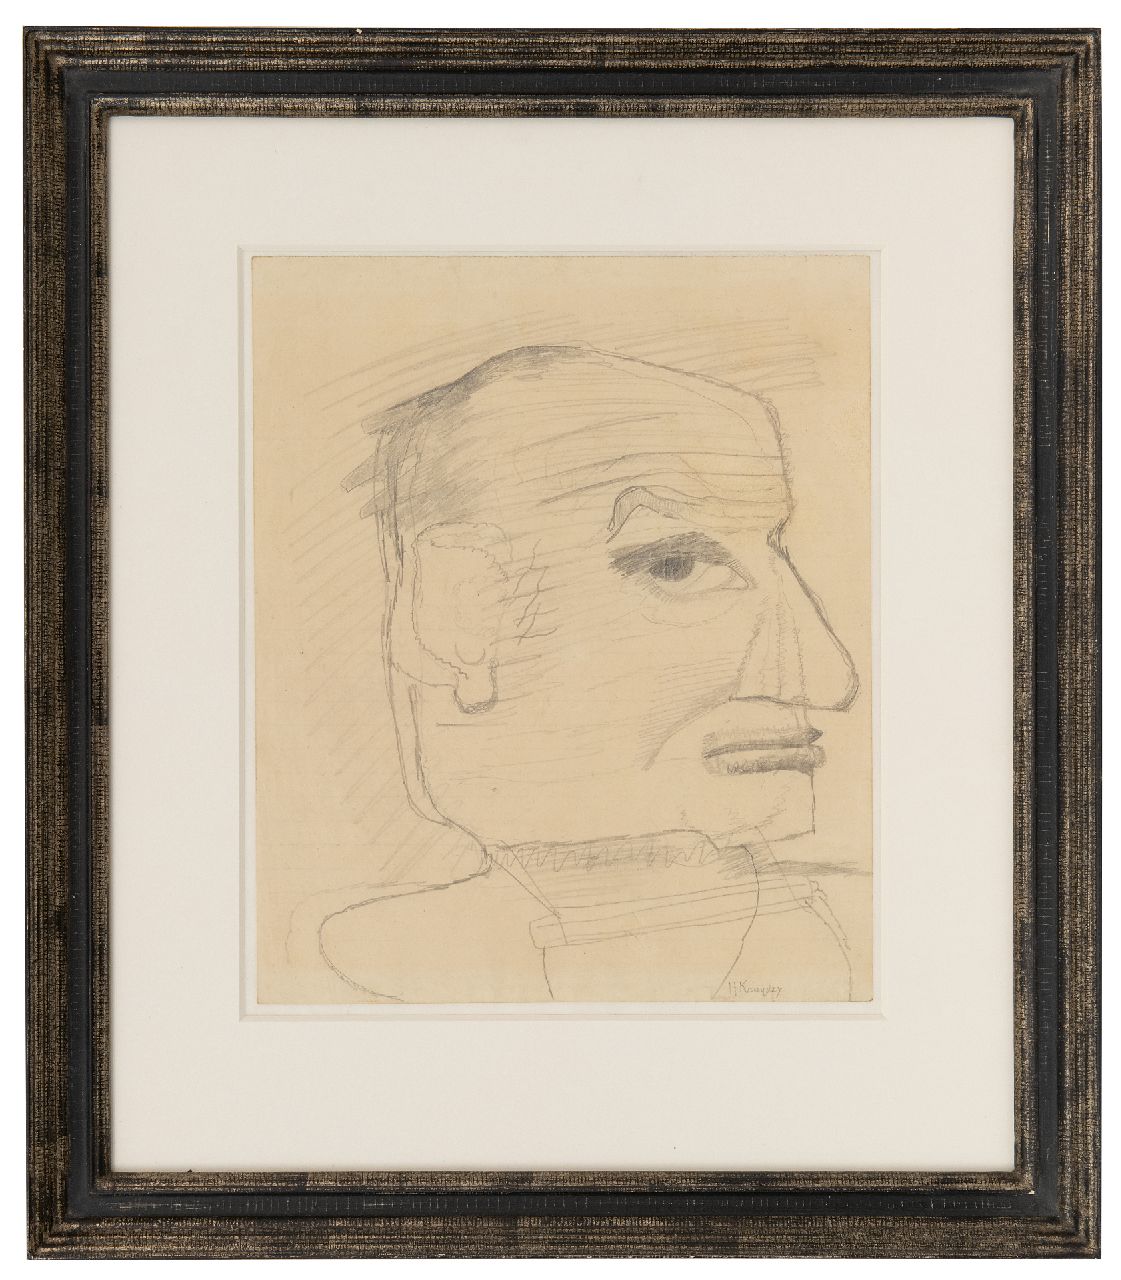 Kruyder H.J.  | 'Herman' Justus Kruyder | Aquarellen en tekeningen te koop aangeboden | Zelfportret (mogelijk), potlood op papier 25,0 x 21,0 cm, gesigneerd rechtsonder